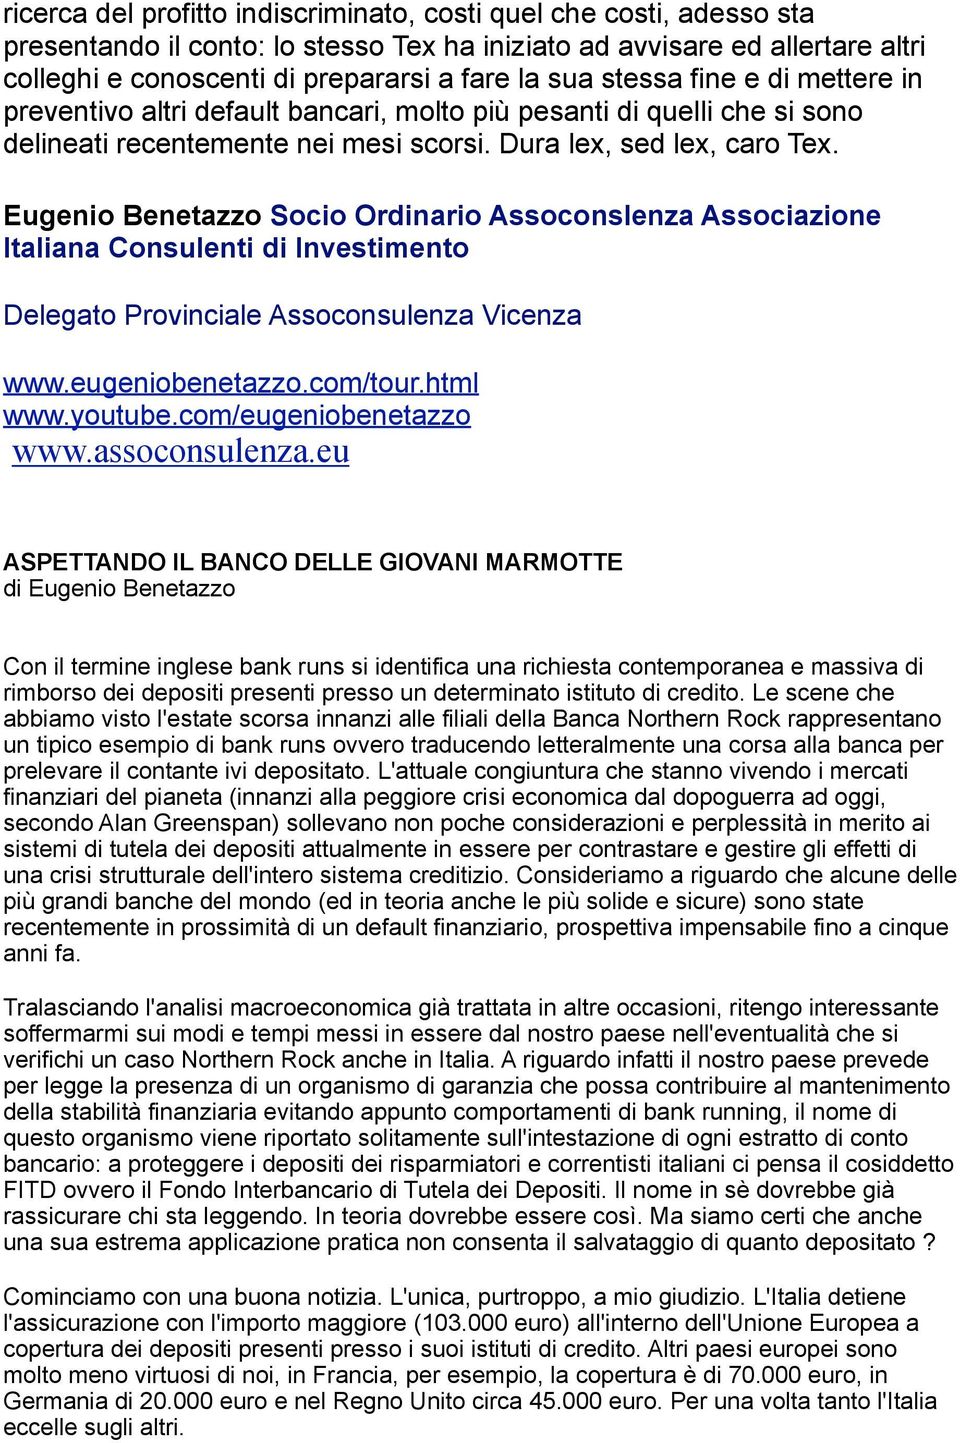 Eugenio Benetazzo Socio Ordinario Assoconslenza Associazione Italiana Consulenti di Investimento Delegato Provinciale Assoconsulenza Vicenza www.assoconsulenza.